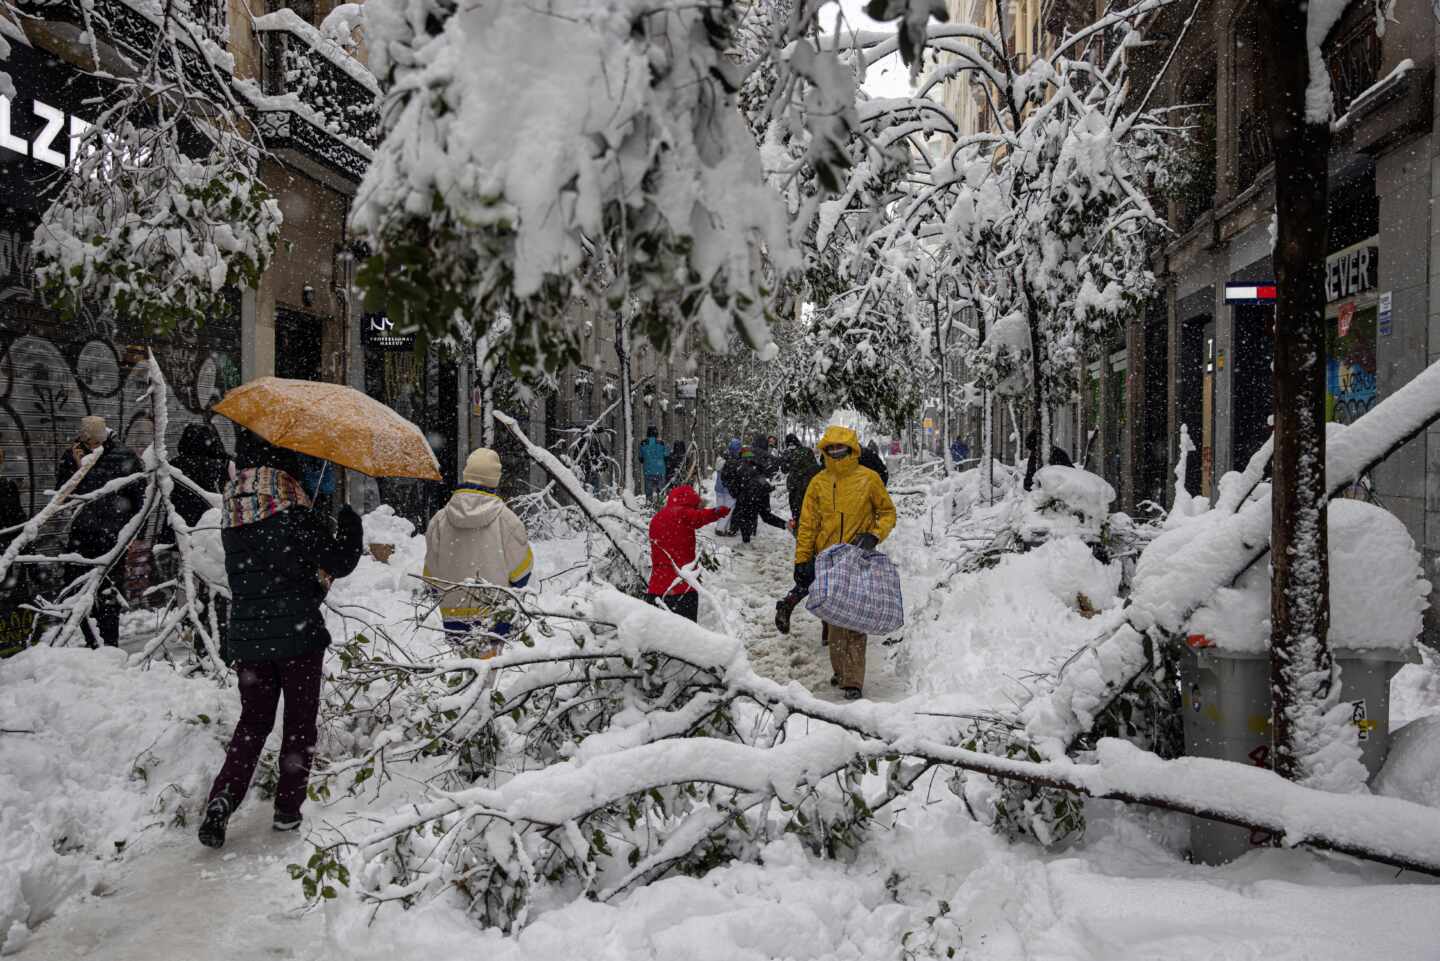 Árboles y parte de la iluminación navideña no han sobrevivido a la nieve en la calle Fuencarral en Madrid